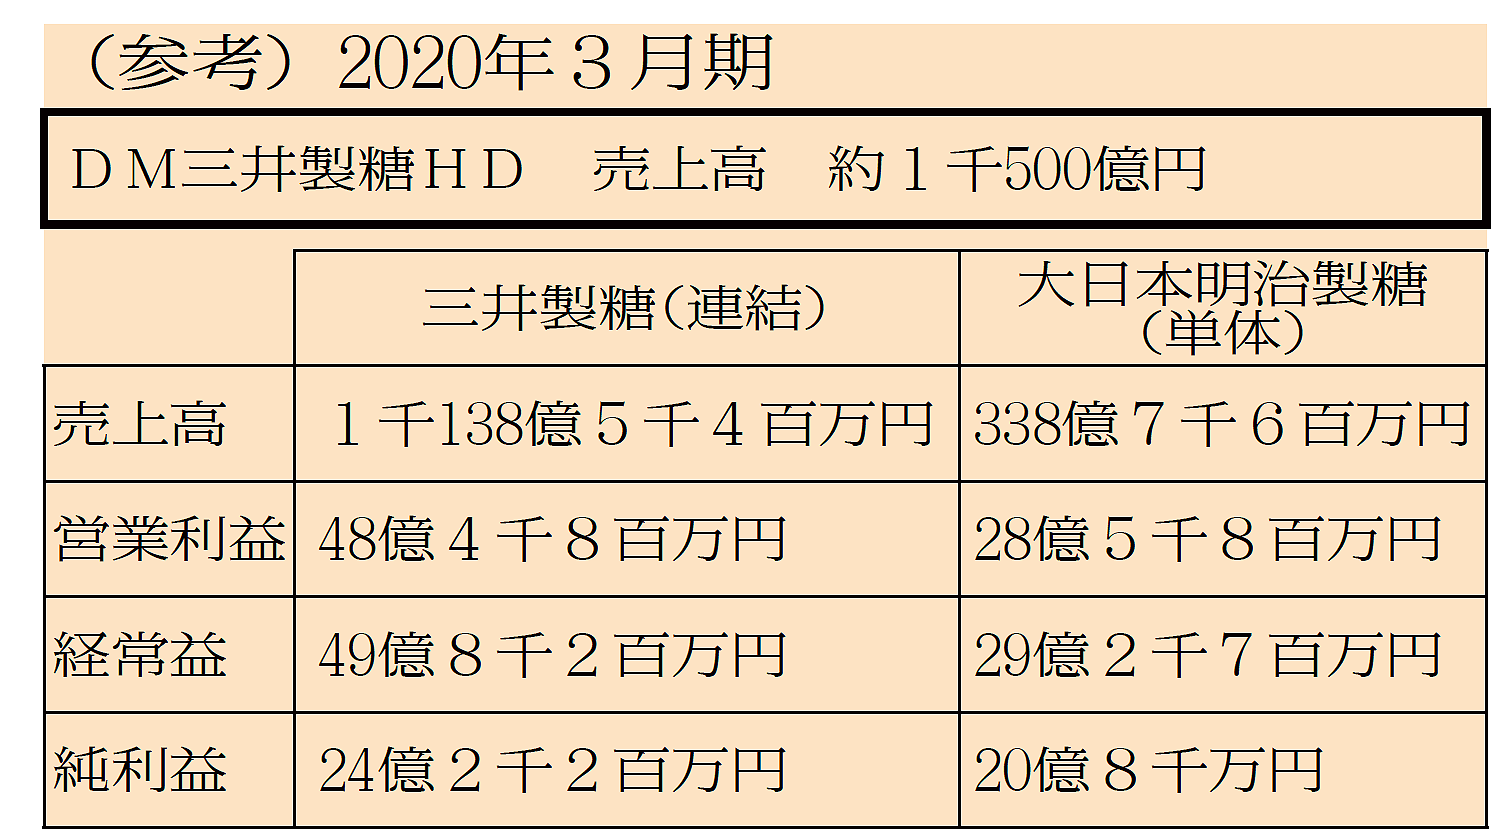 DM三井製糖ホールディングス 2020年3月期 売上高